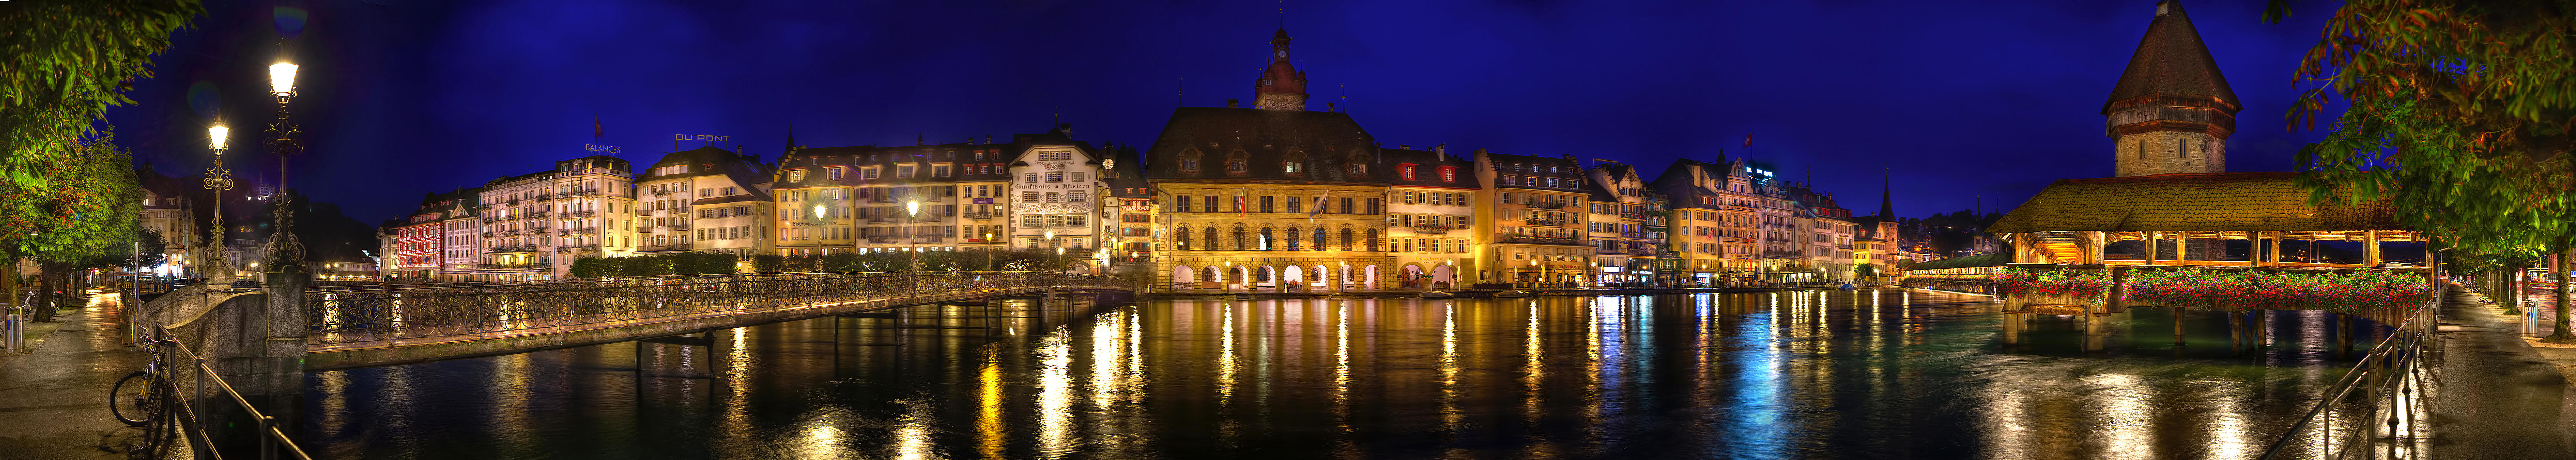 桌面上的壁纸城市 瑞士 全景图